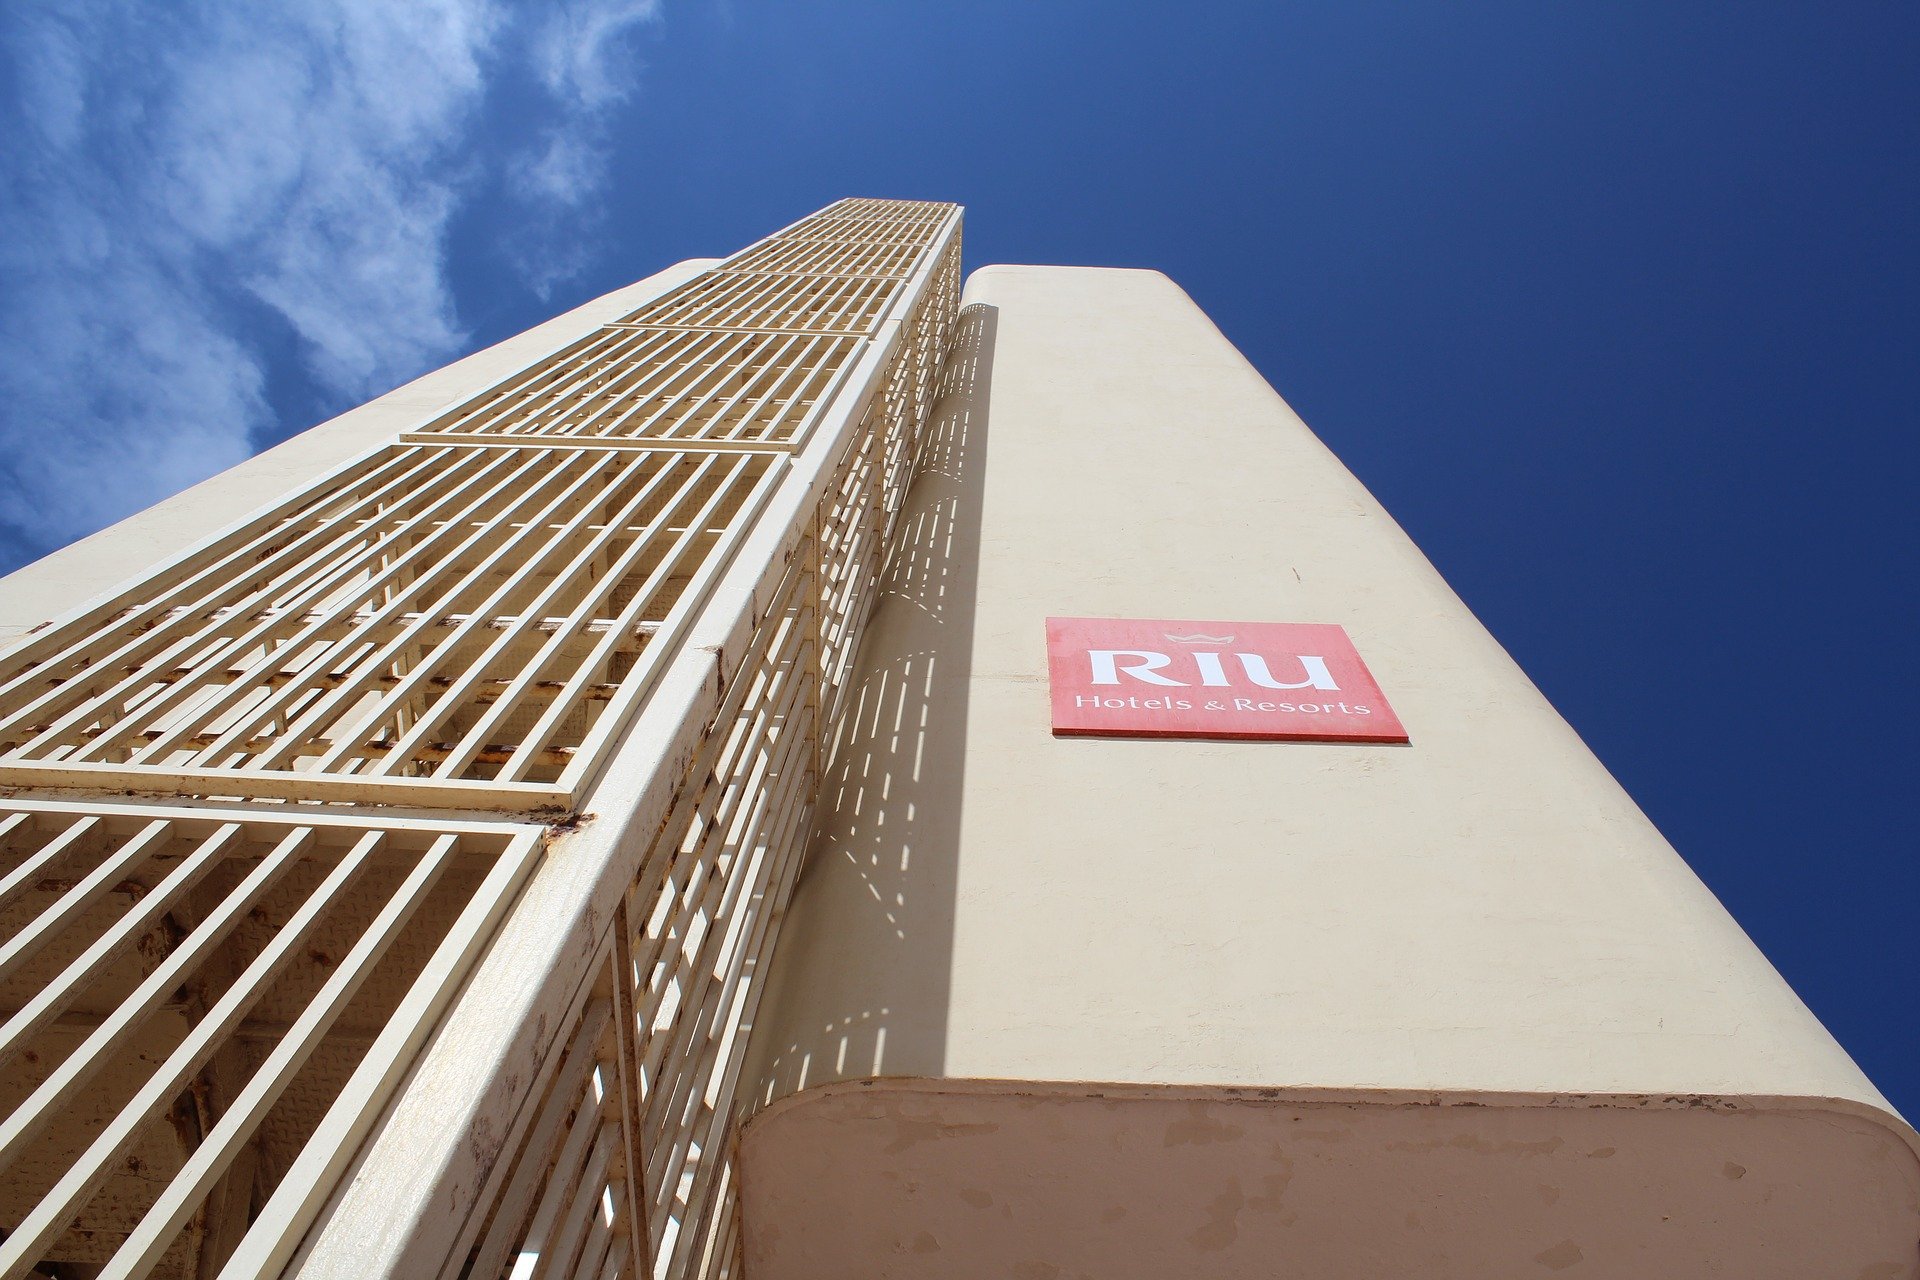 Detingut a Miami el propietari dels hotels RIU per corrupció